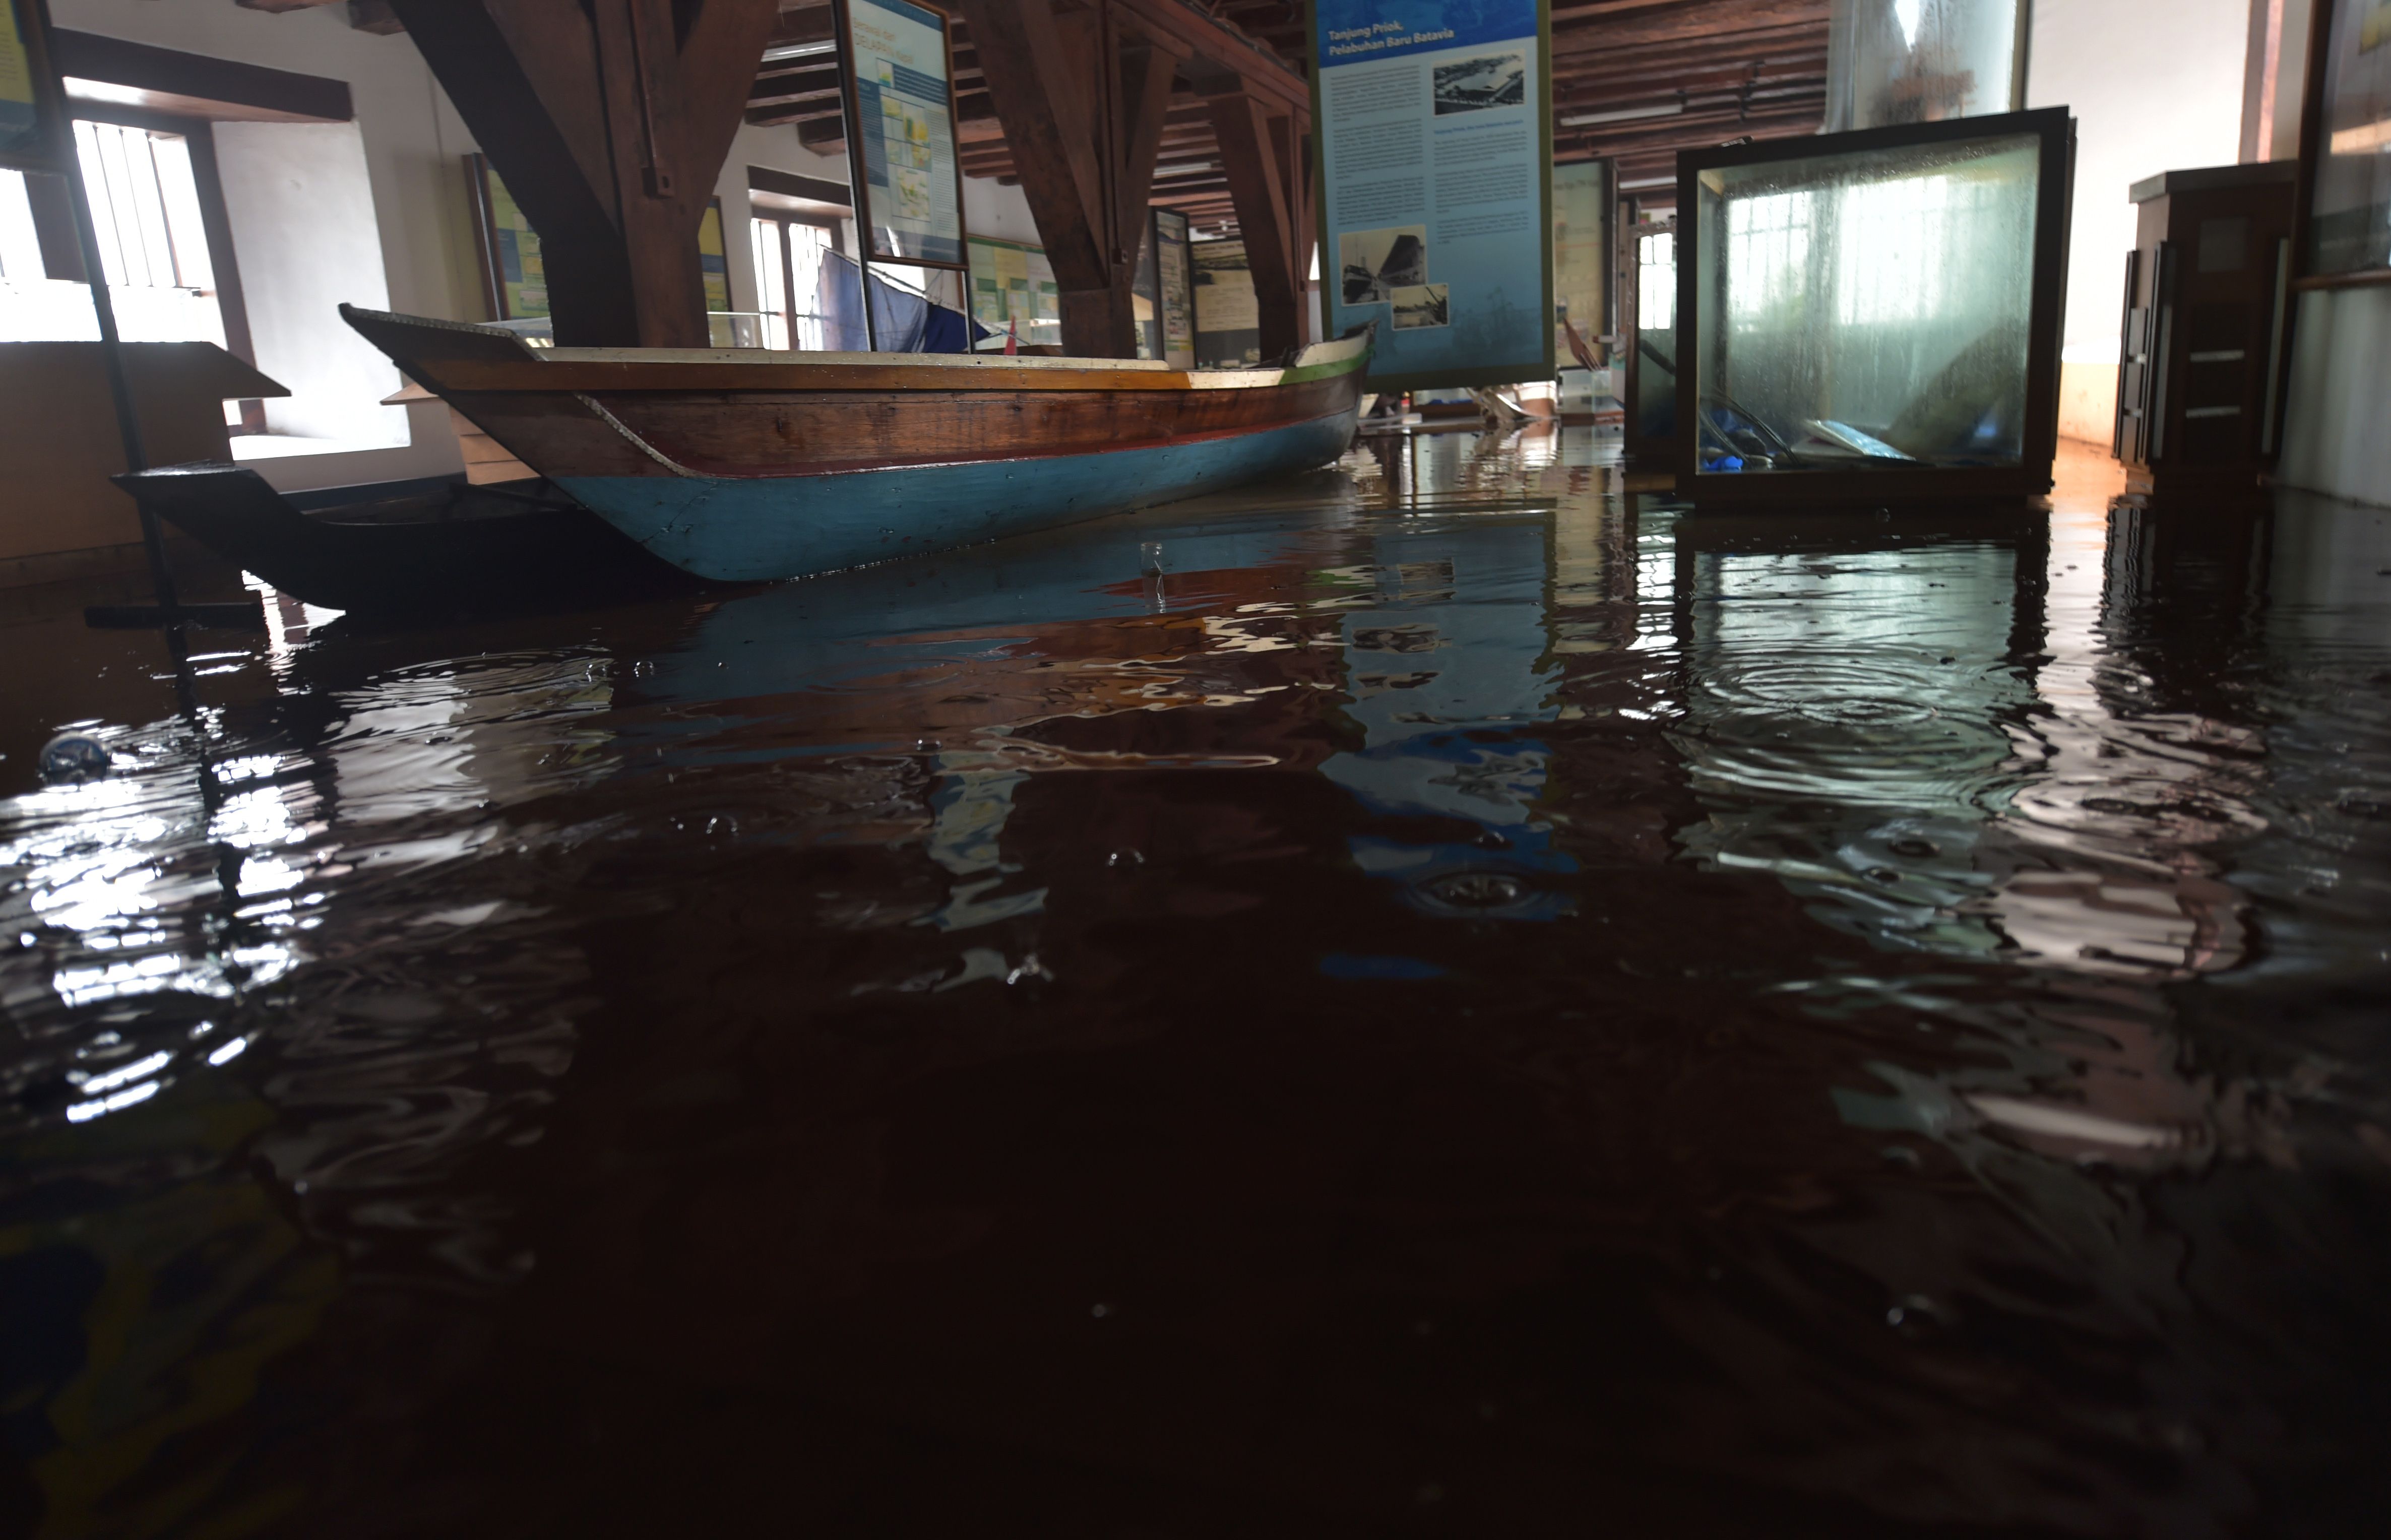 المياه تغمر الآثار فى متحف بإندونيسيا إثر حريق